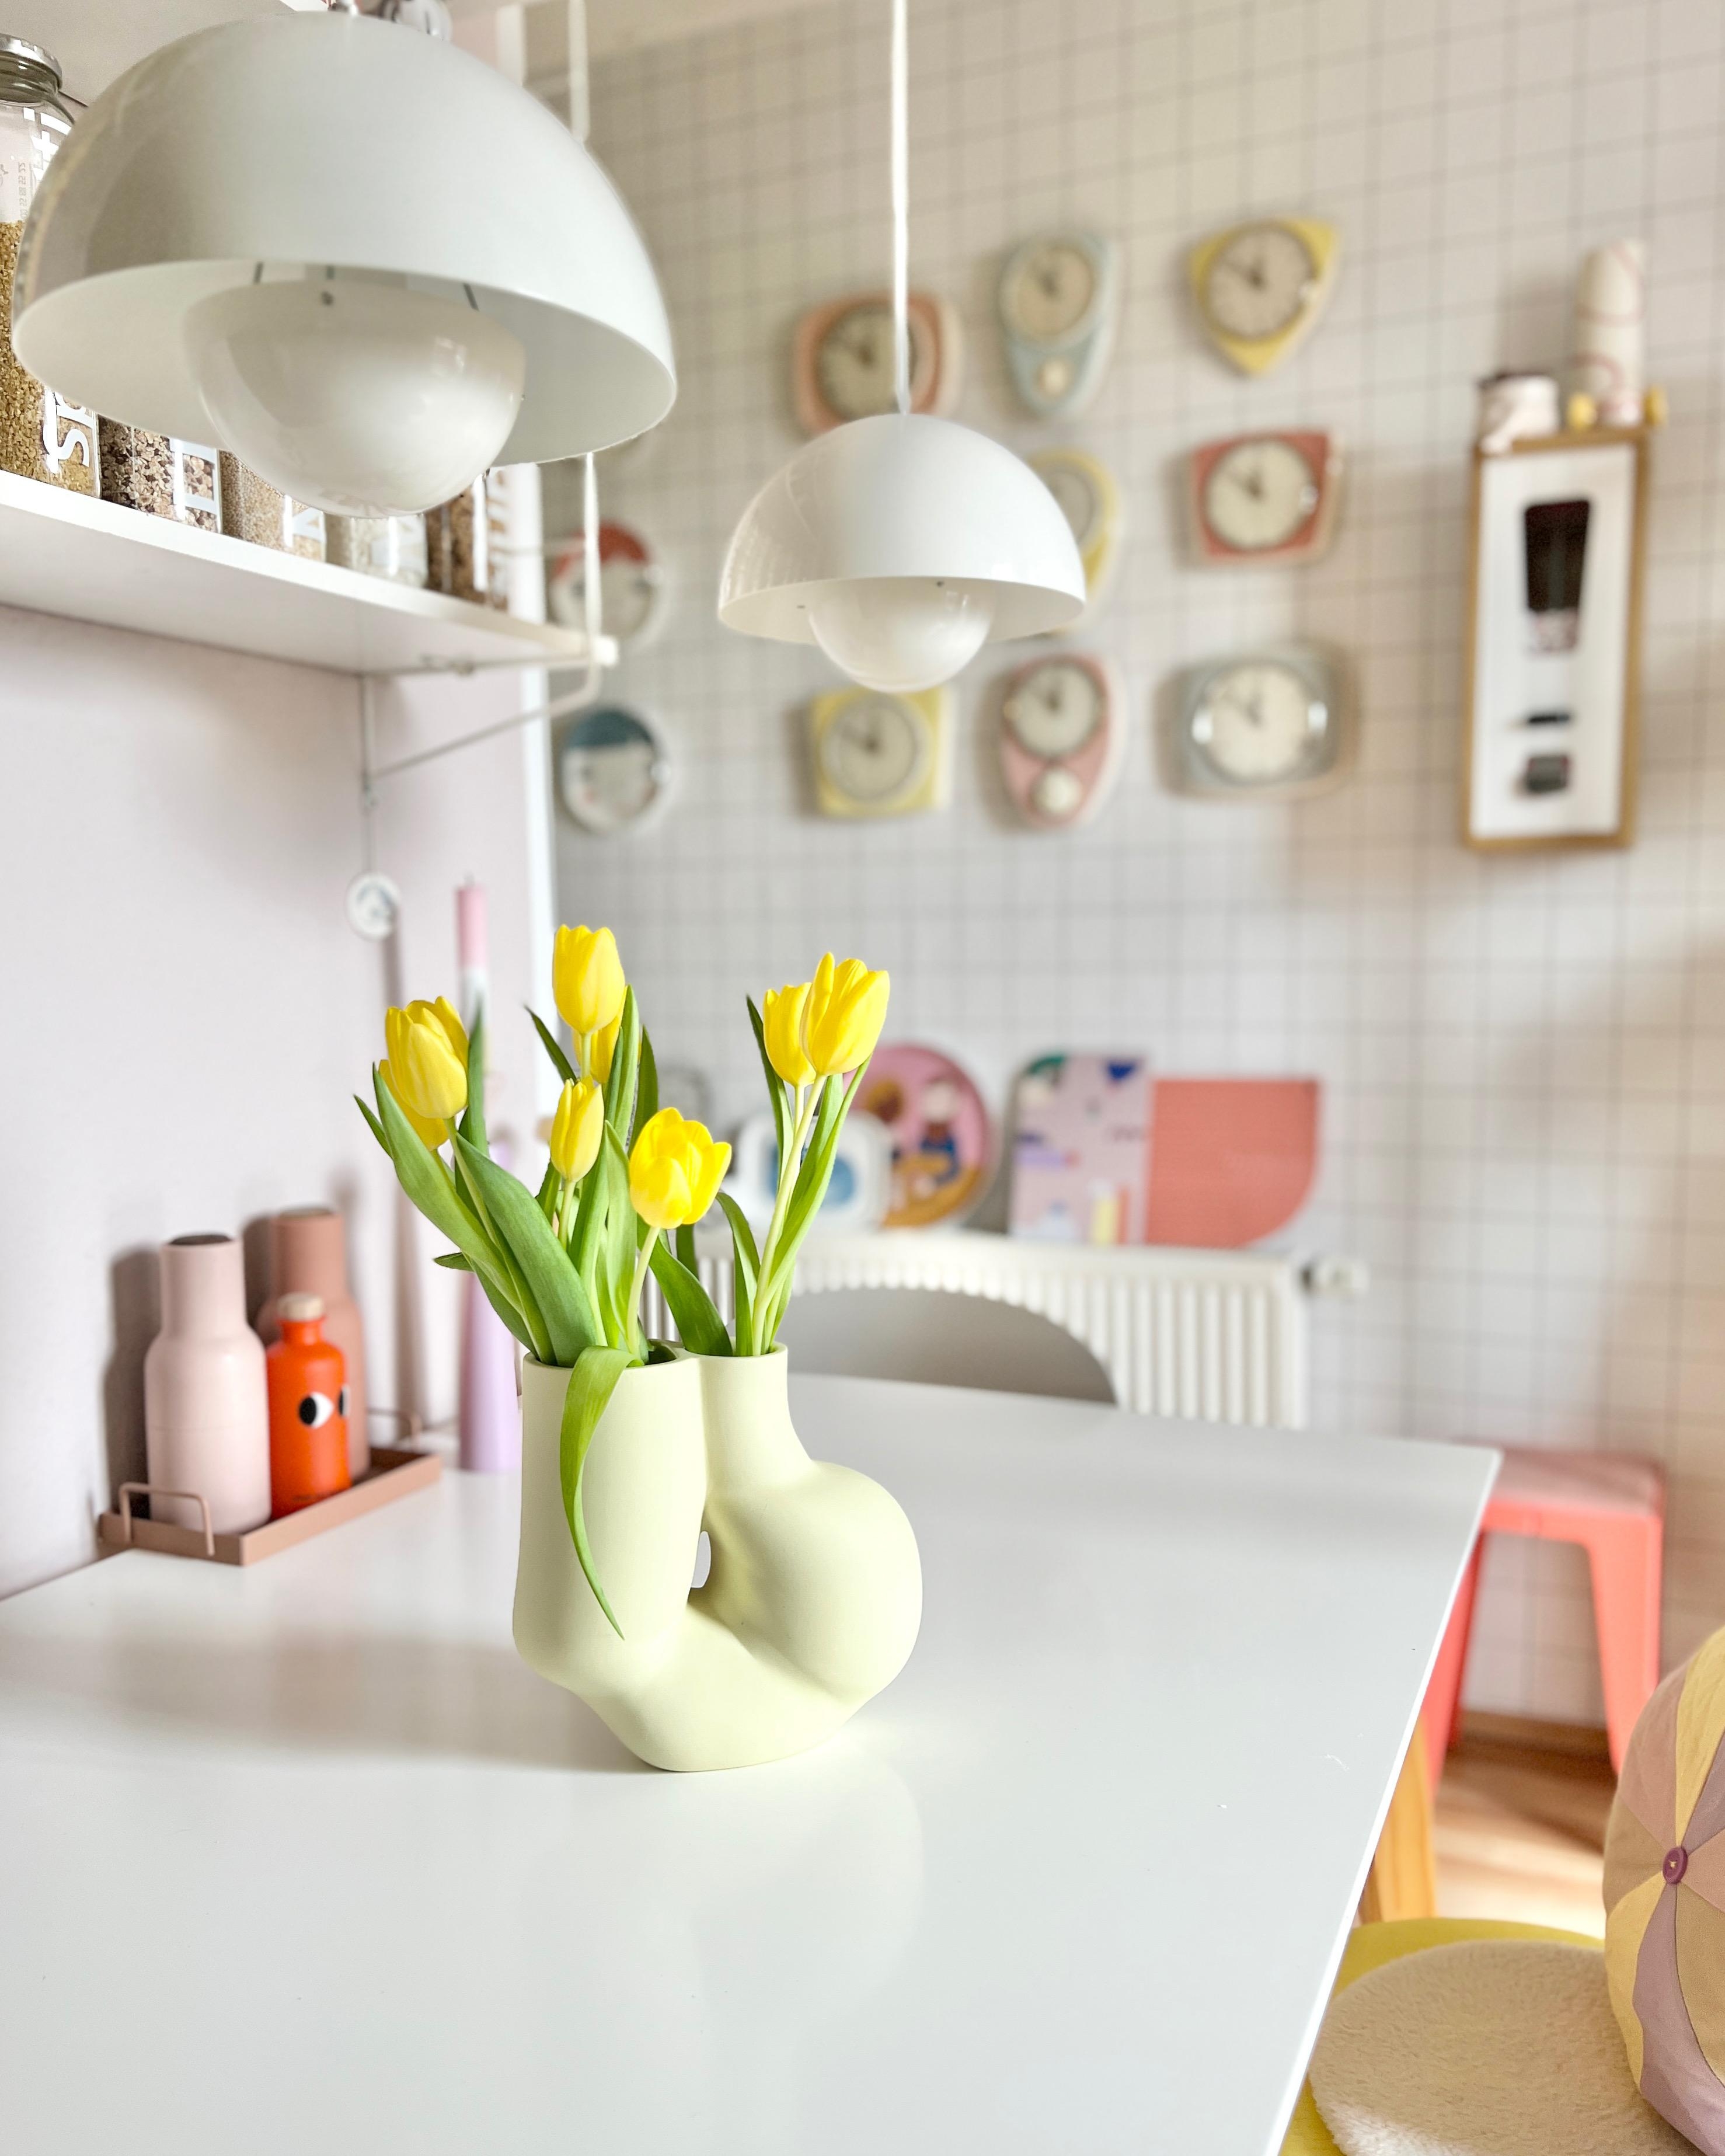 #interior #interiordesign #couchliebt  #colourfulkitchen #vintage #pastell #küche #tulpen #frühling #flowerpot #vase